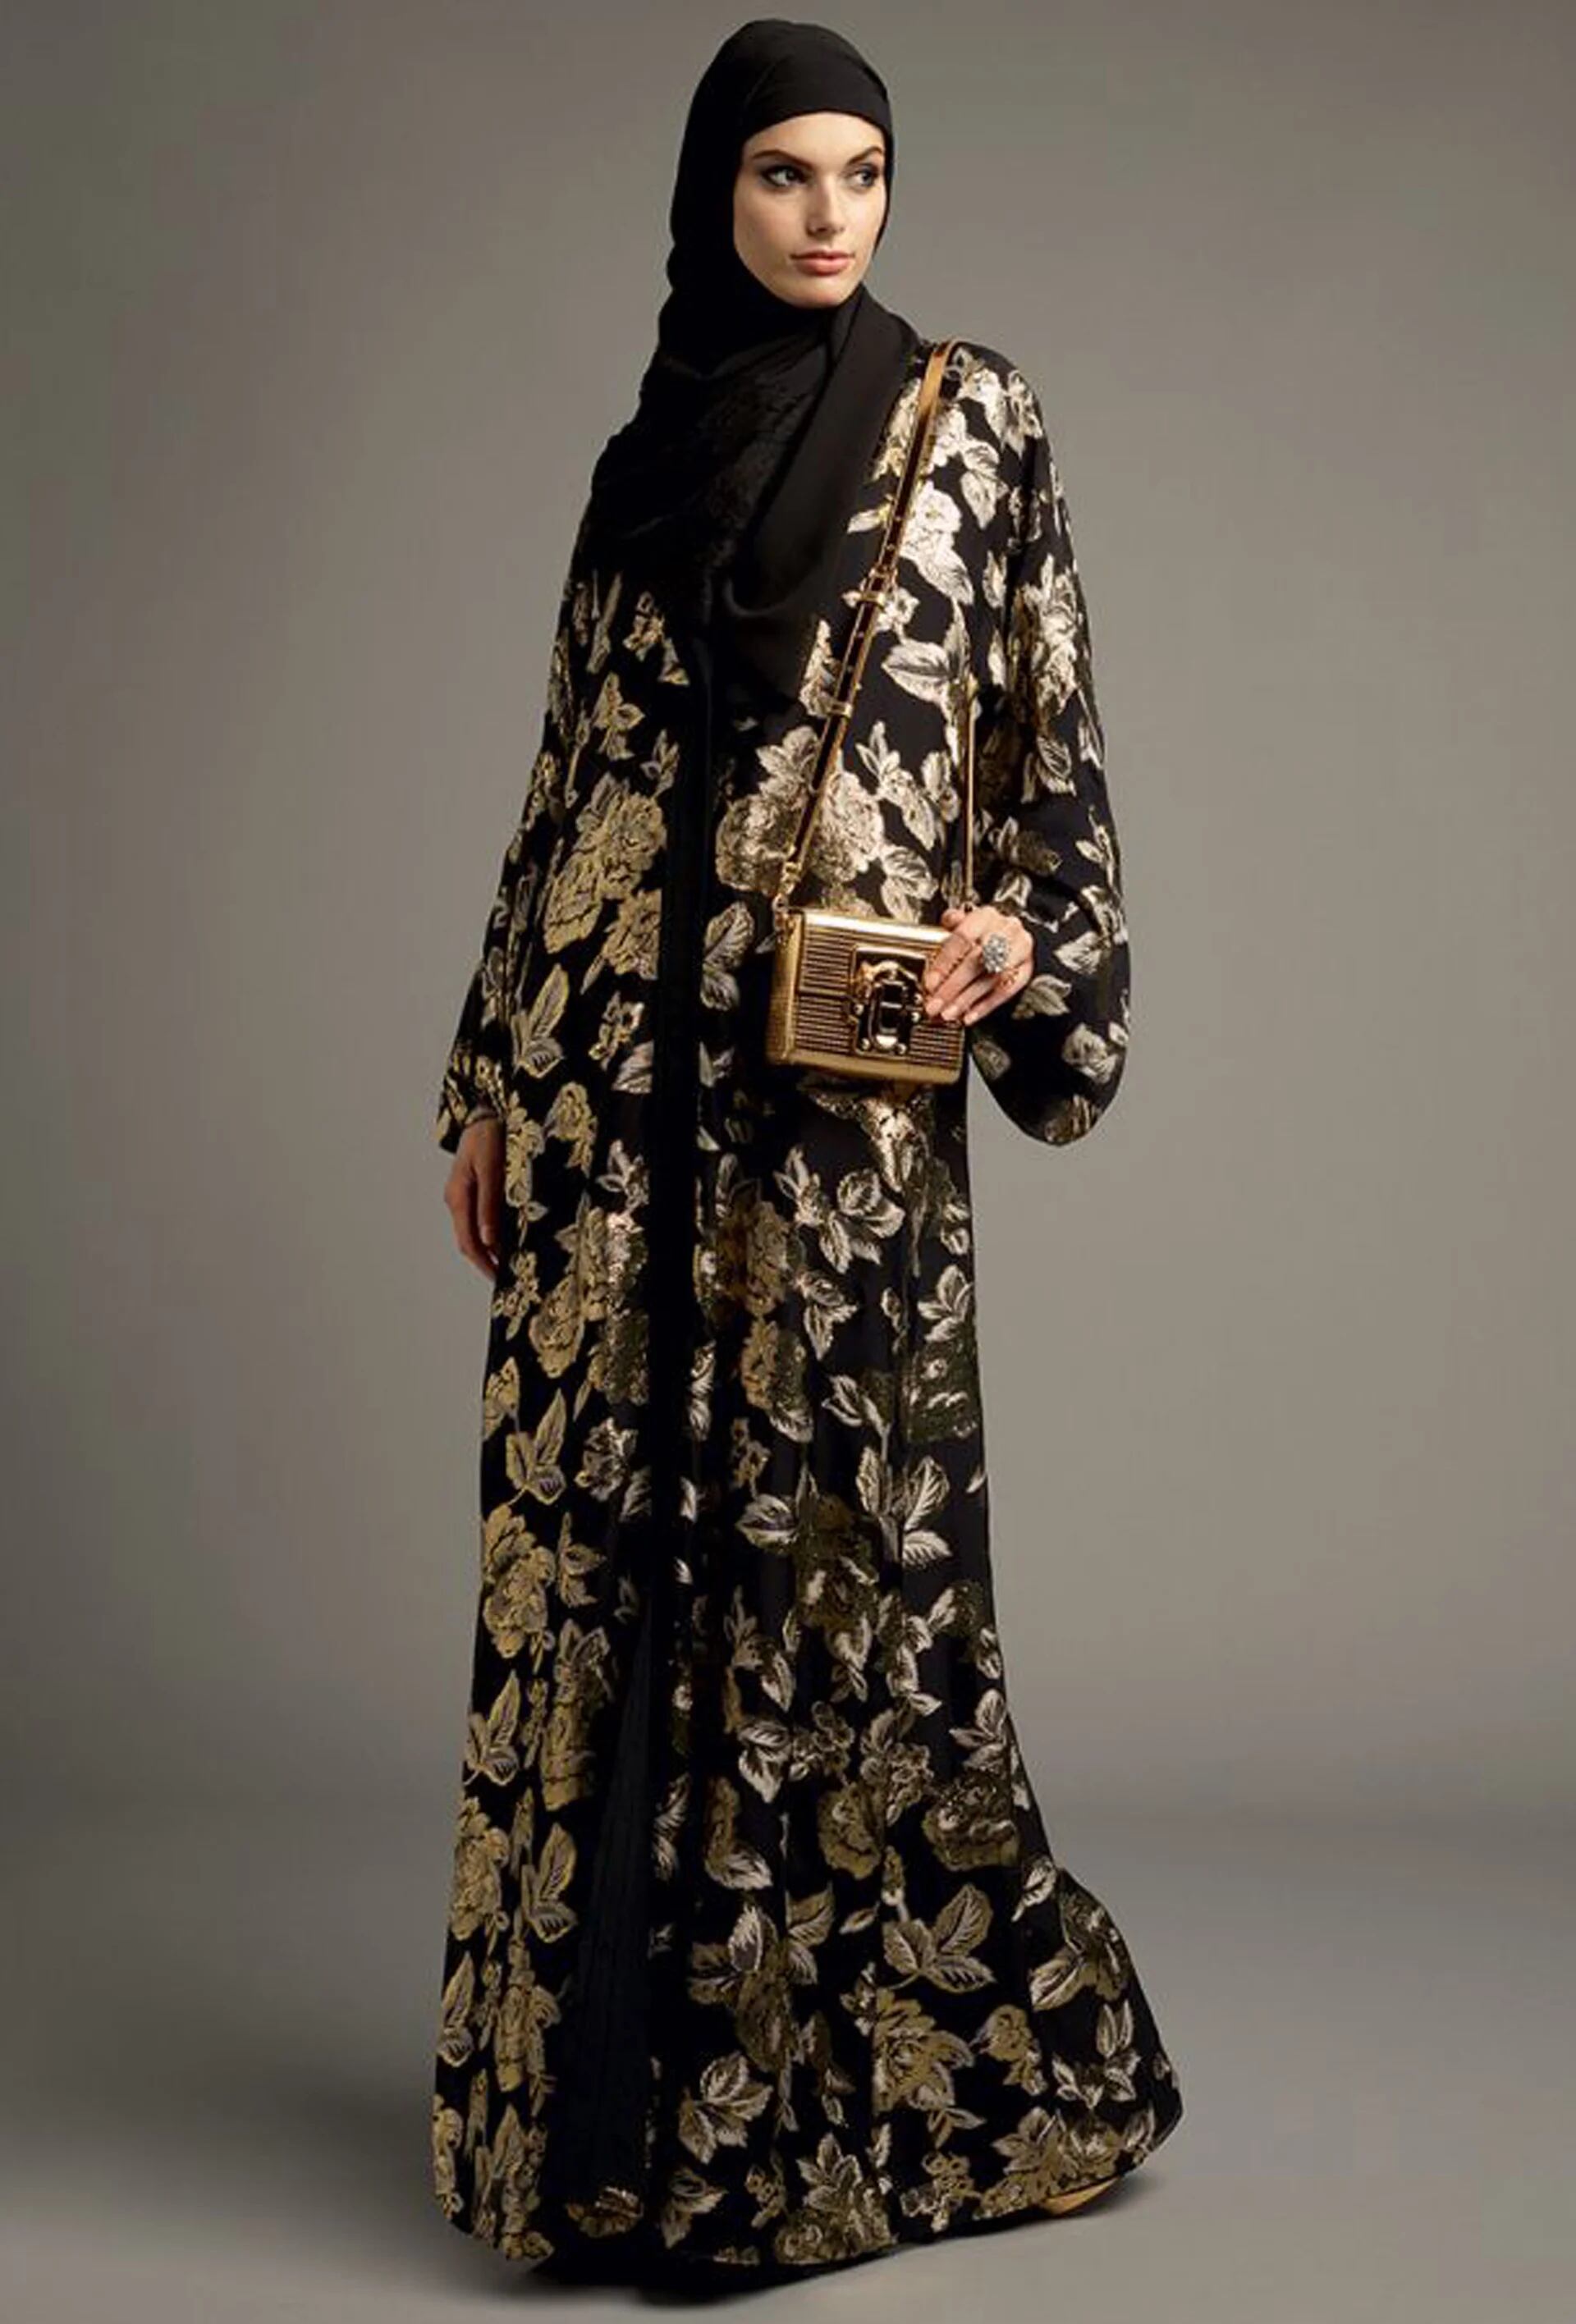 Abaya en seda estampada con flores doradas (Vogue Arabia)